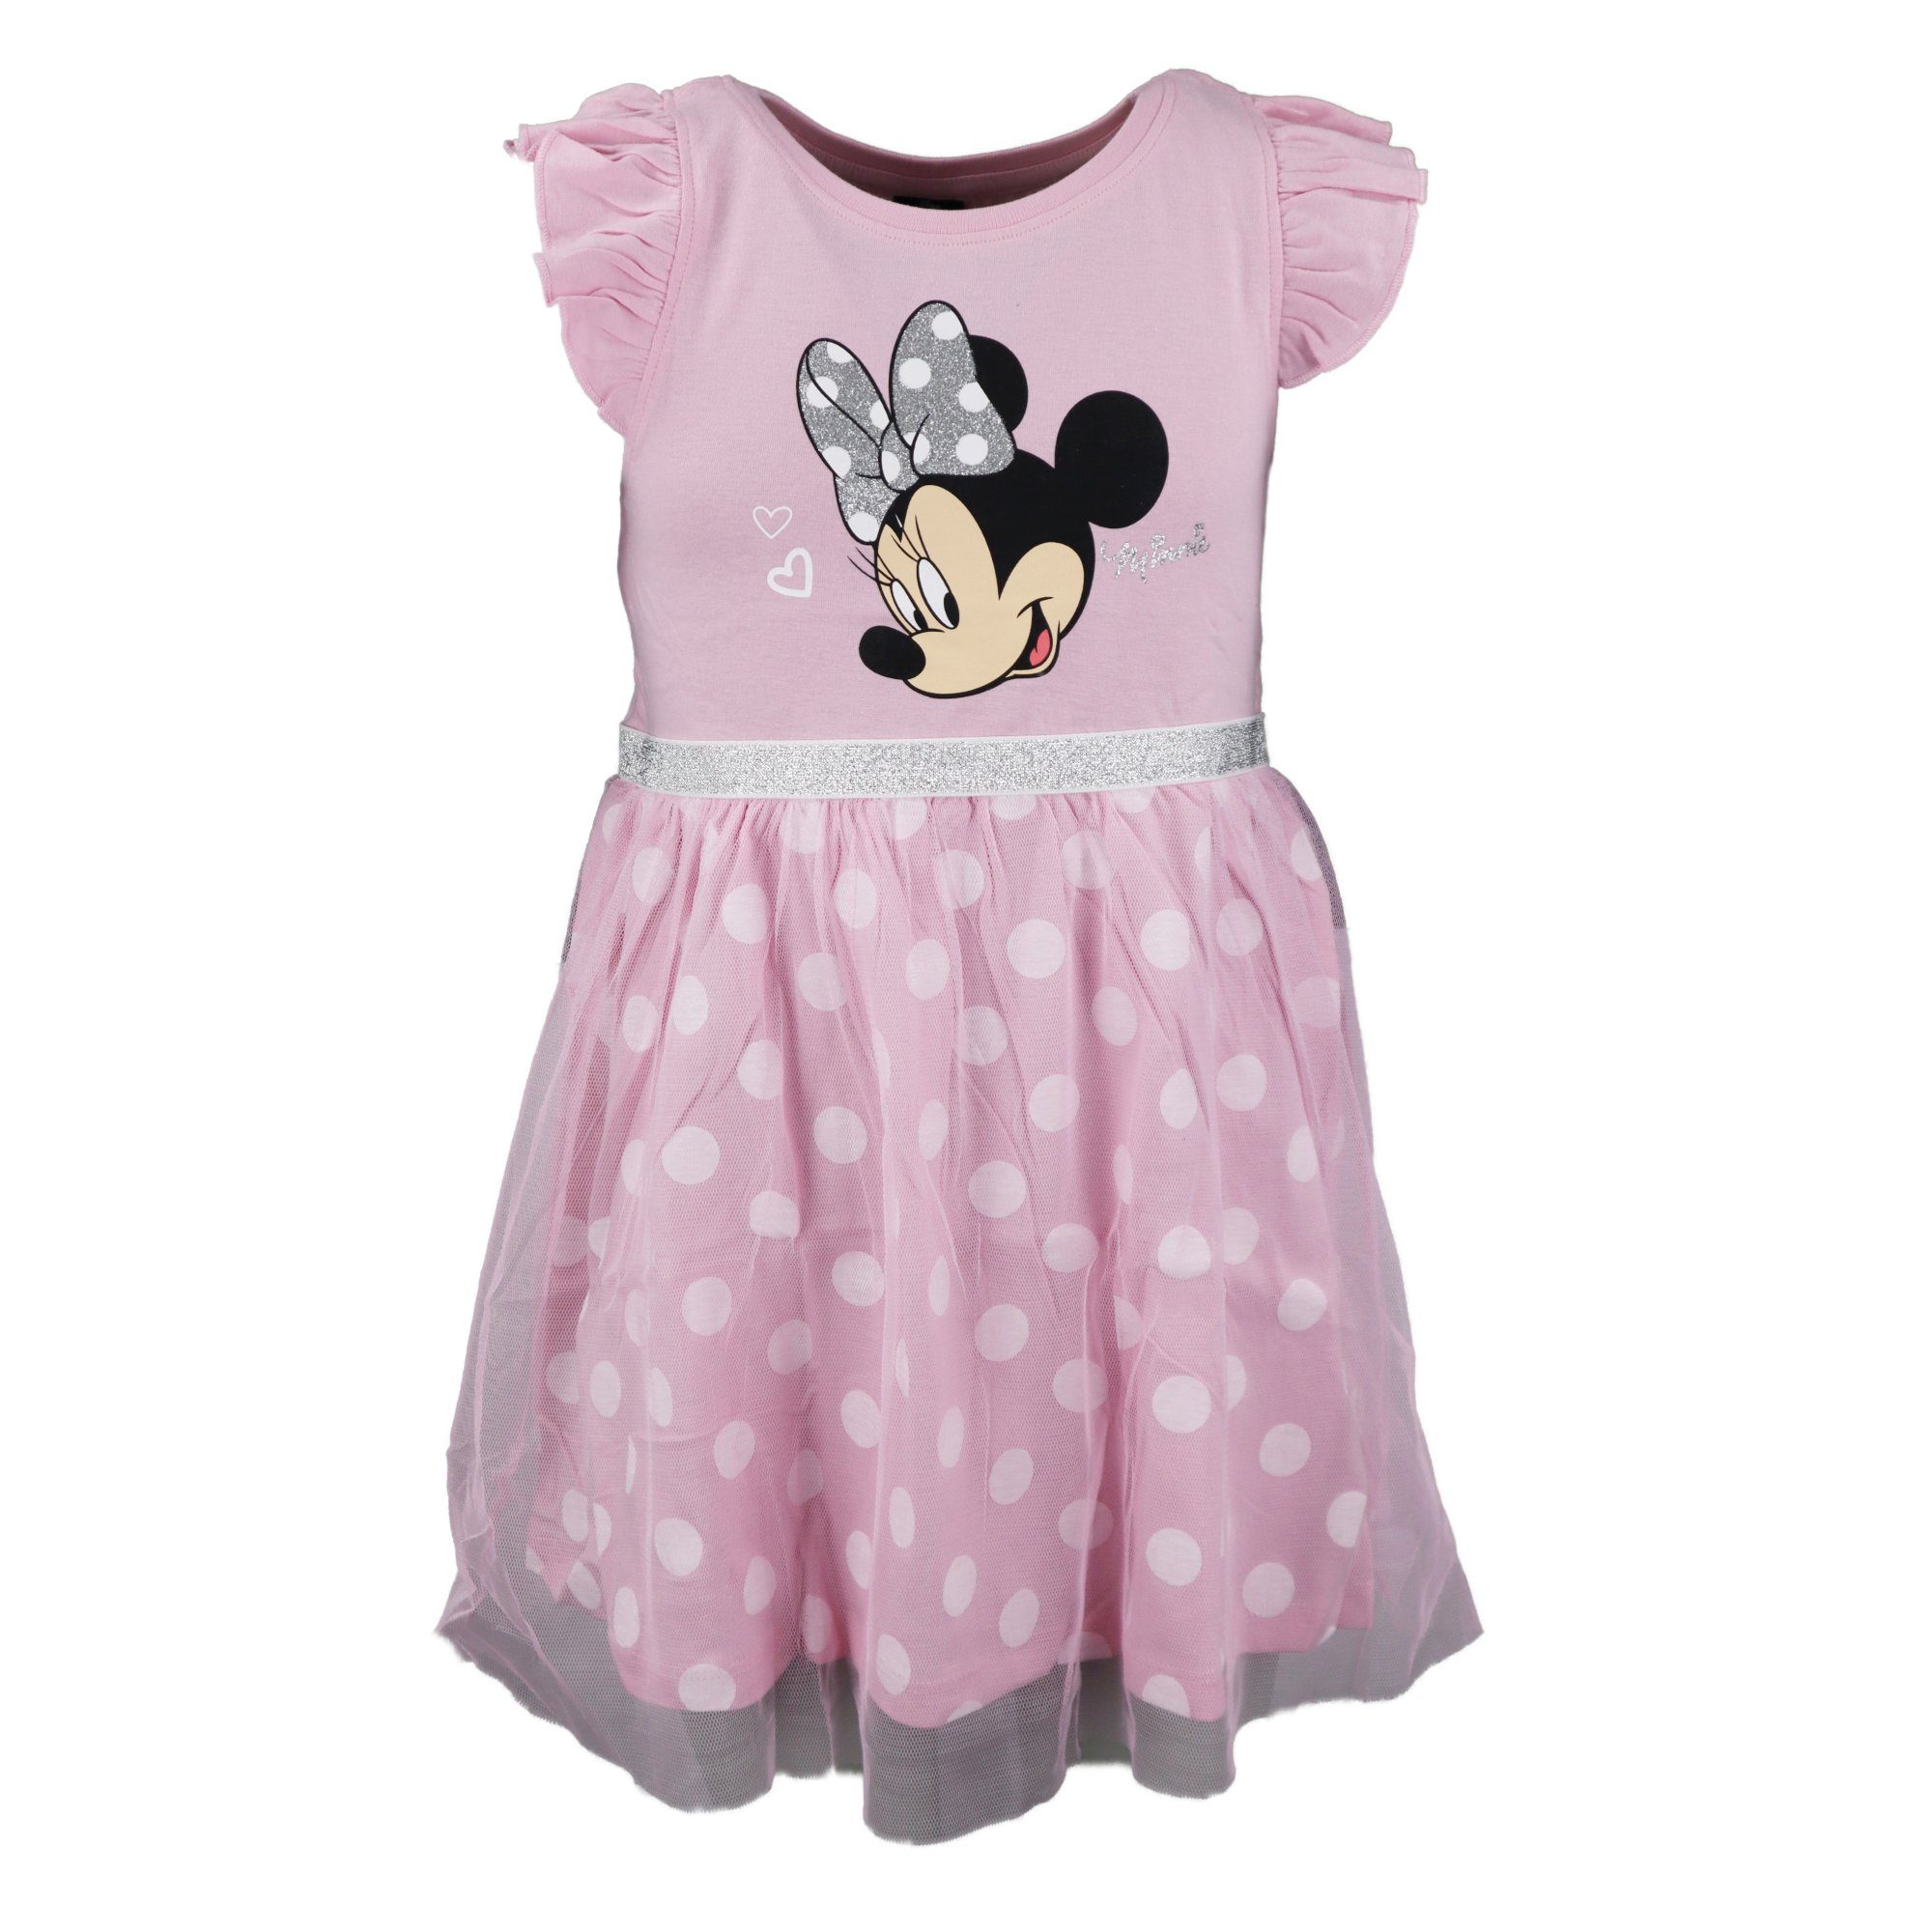 Gr. Maus Mädchen Disney Kleid Tüllkleid Minnie Kinder Disney Minnie 104 bis 134 Mouse